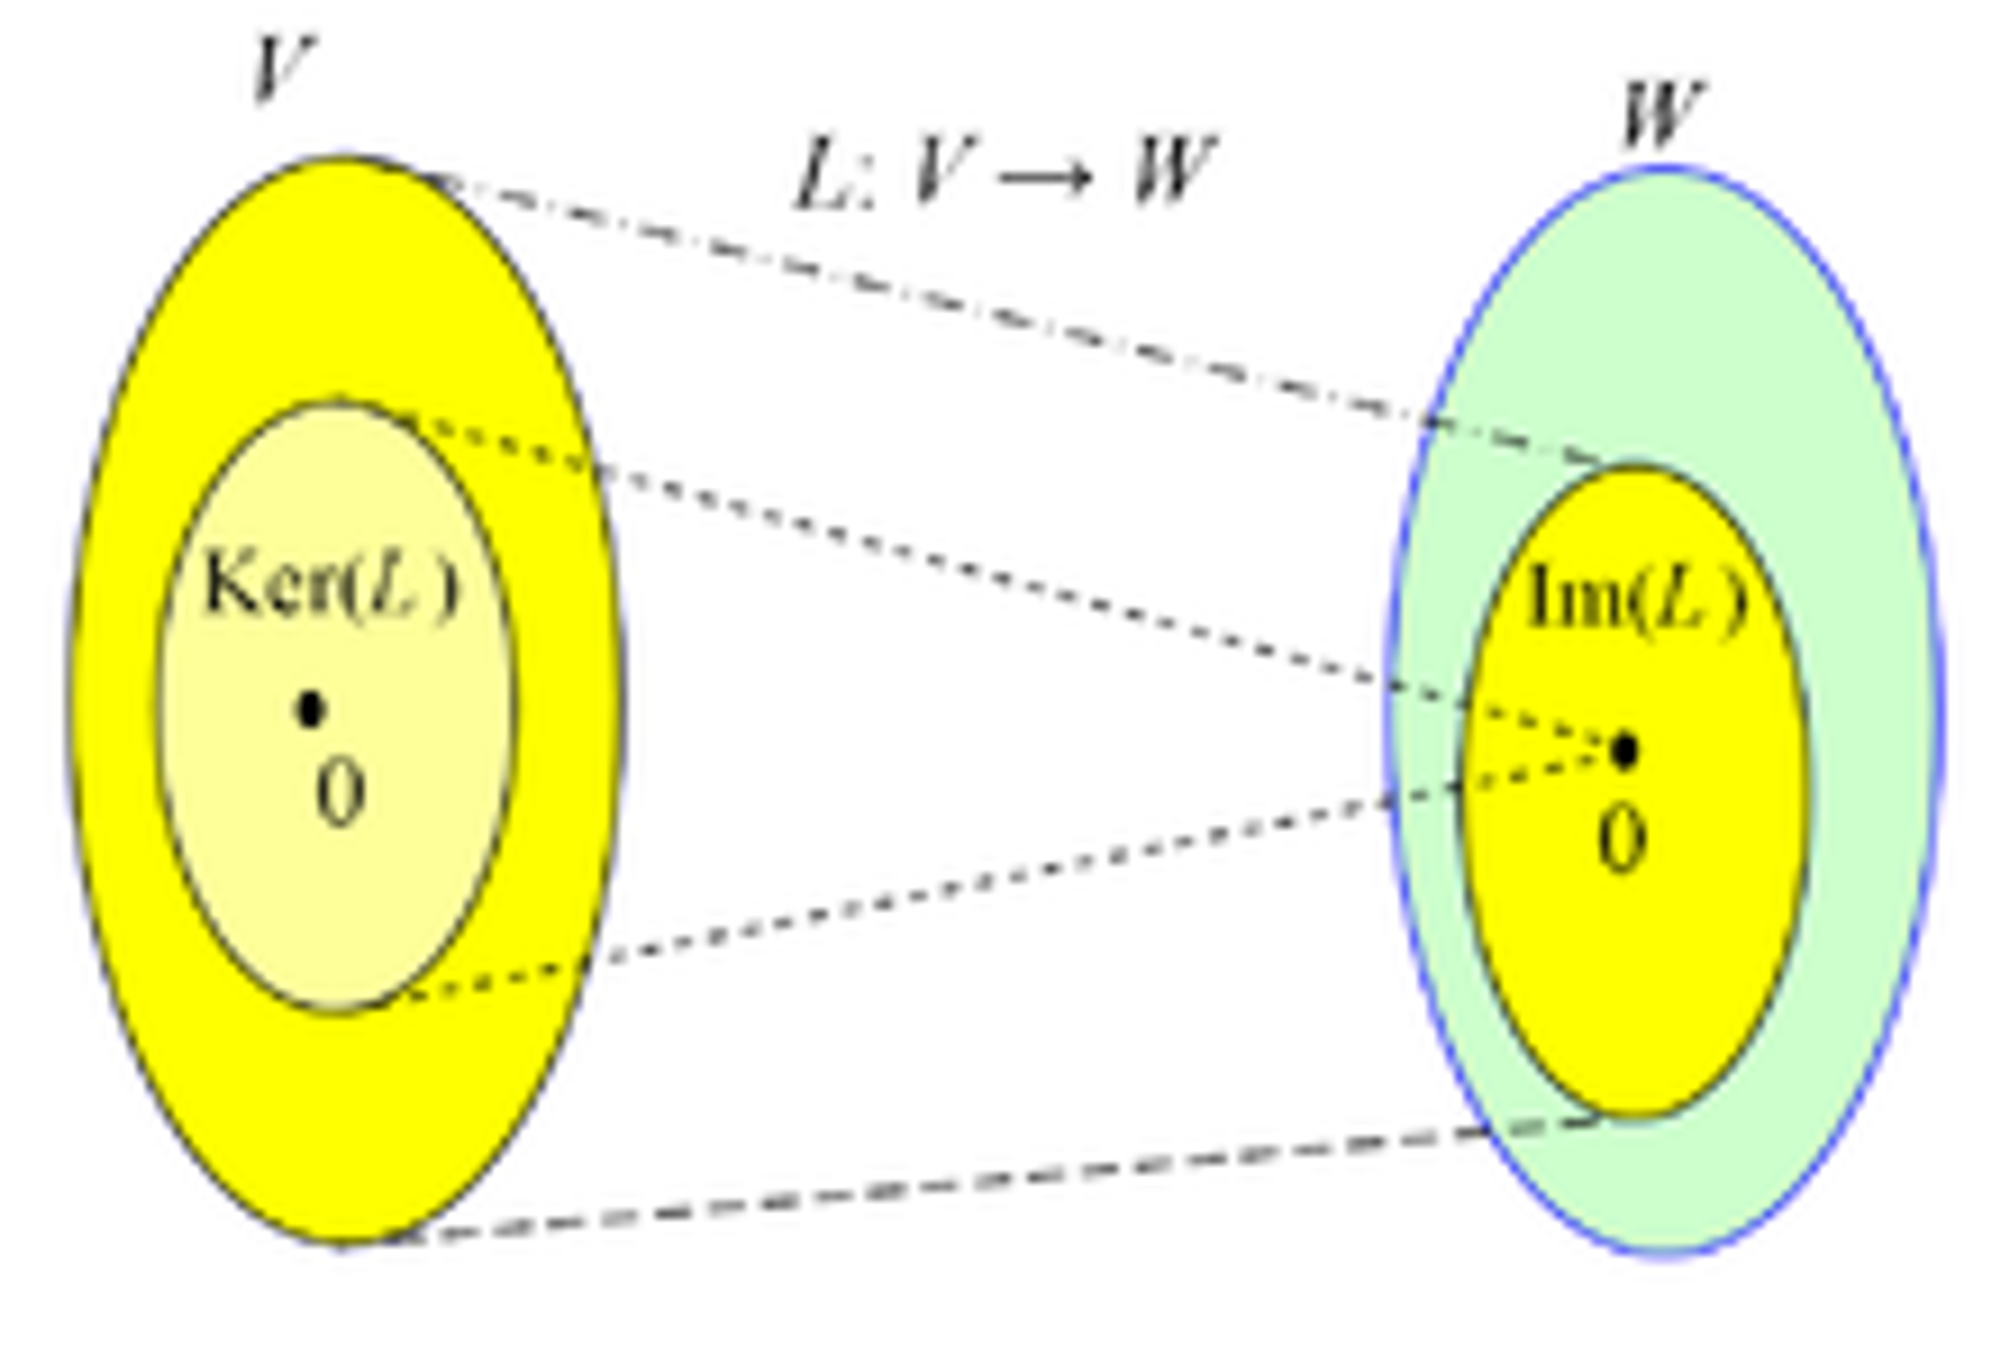 Kernel (linear algebra)